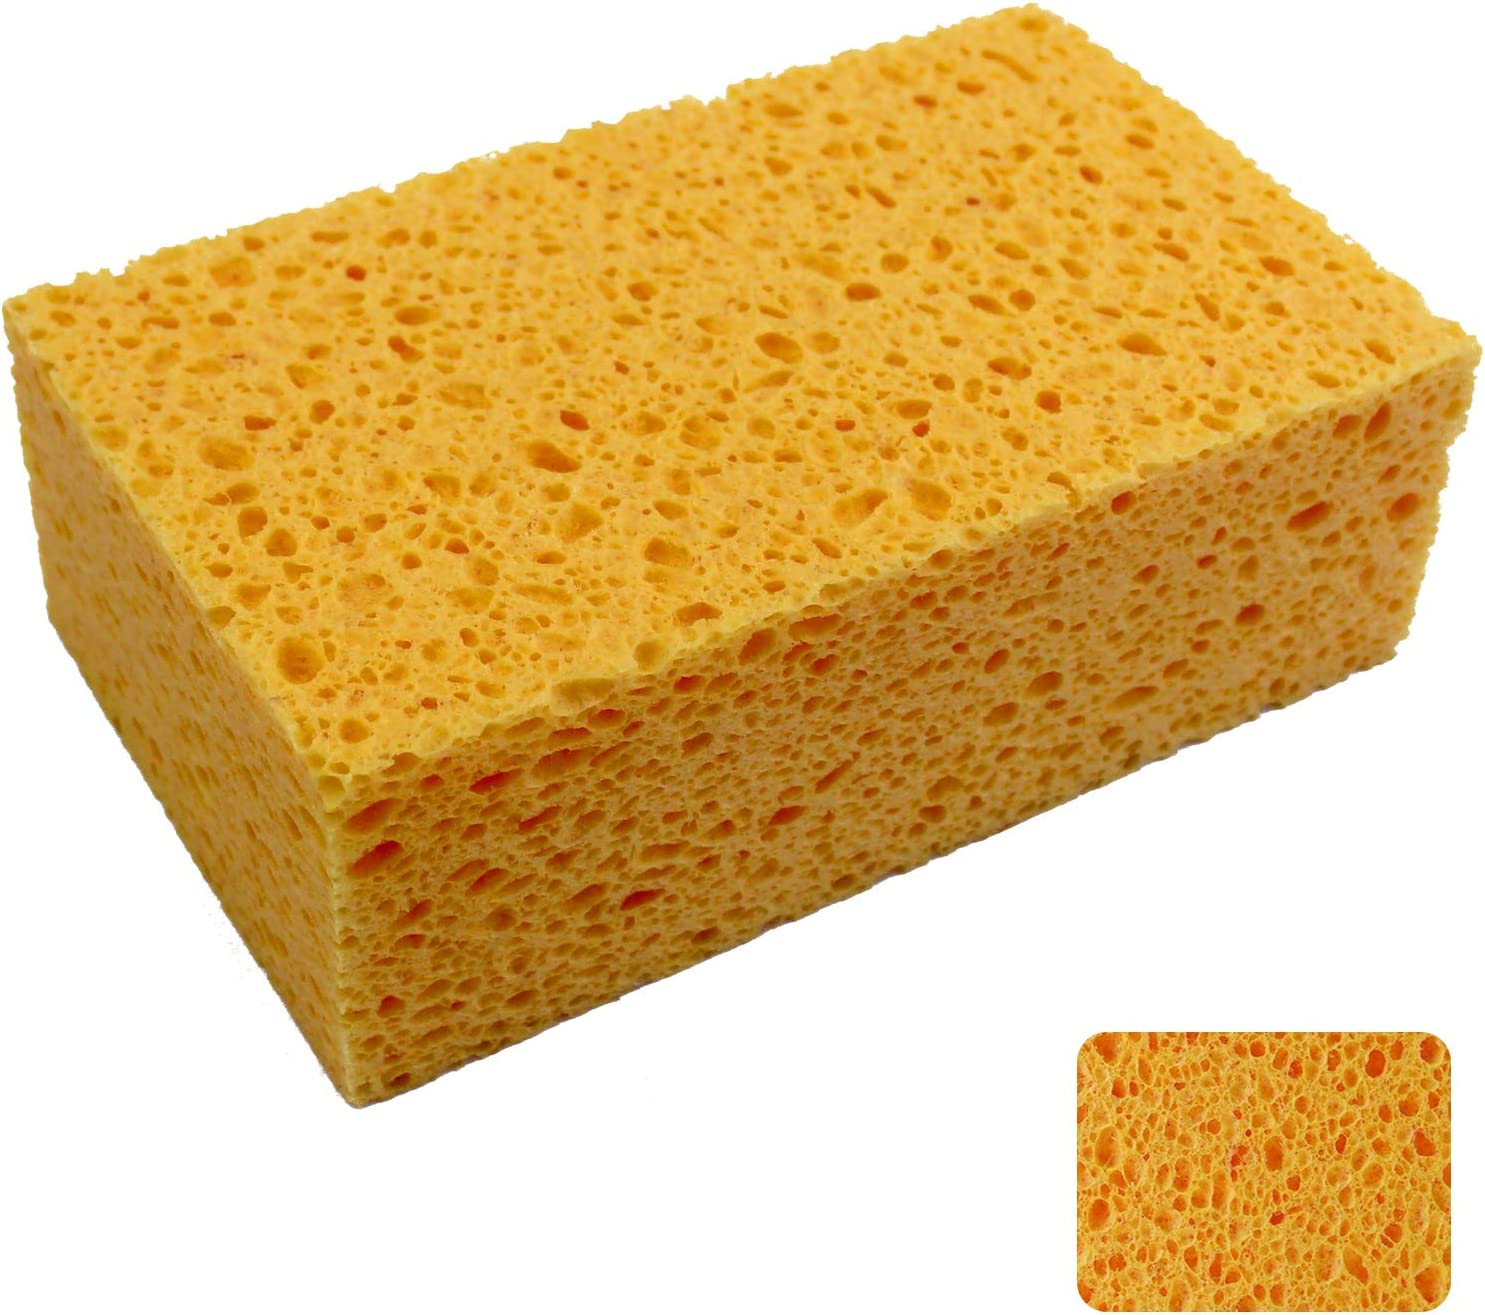 1 PCS x JK SP-T50 Large Sponge, Cleaning Sponges, Boat Bail Sponge, Handy  Sponges, Cellulose Sponges, Natural Sponges, Commercial Sponges, Car  Washing